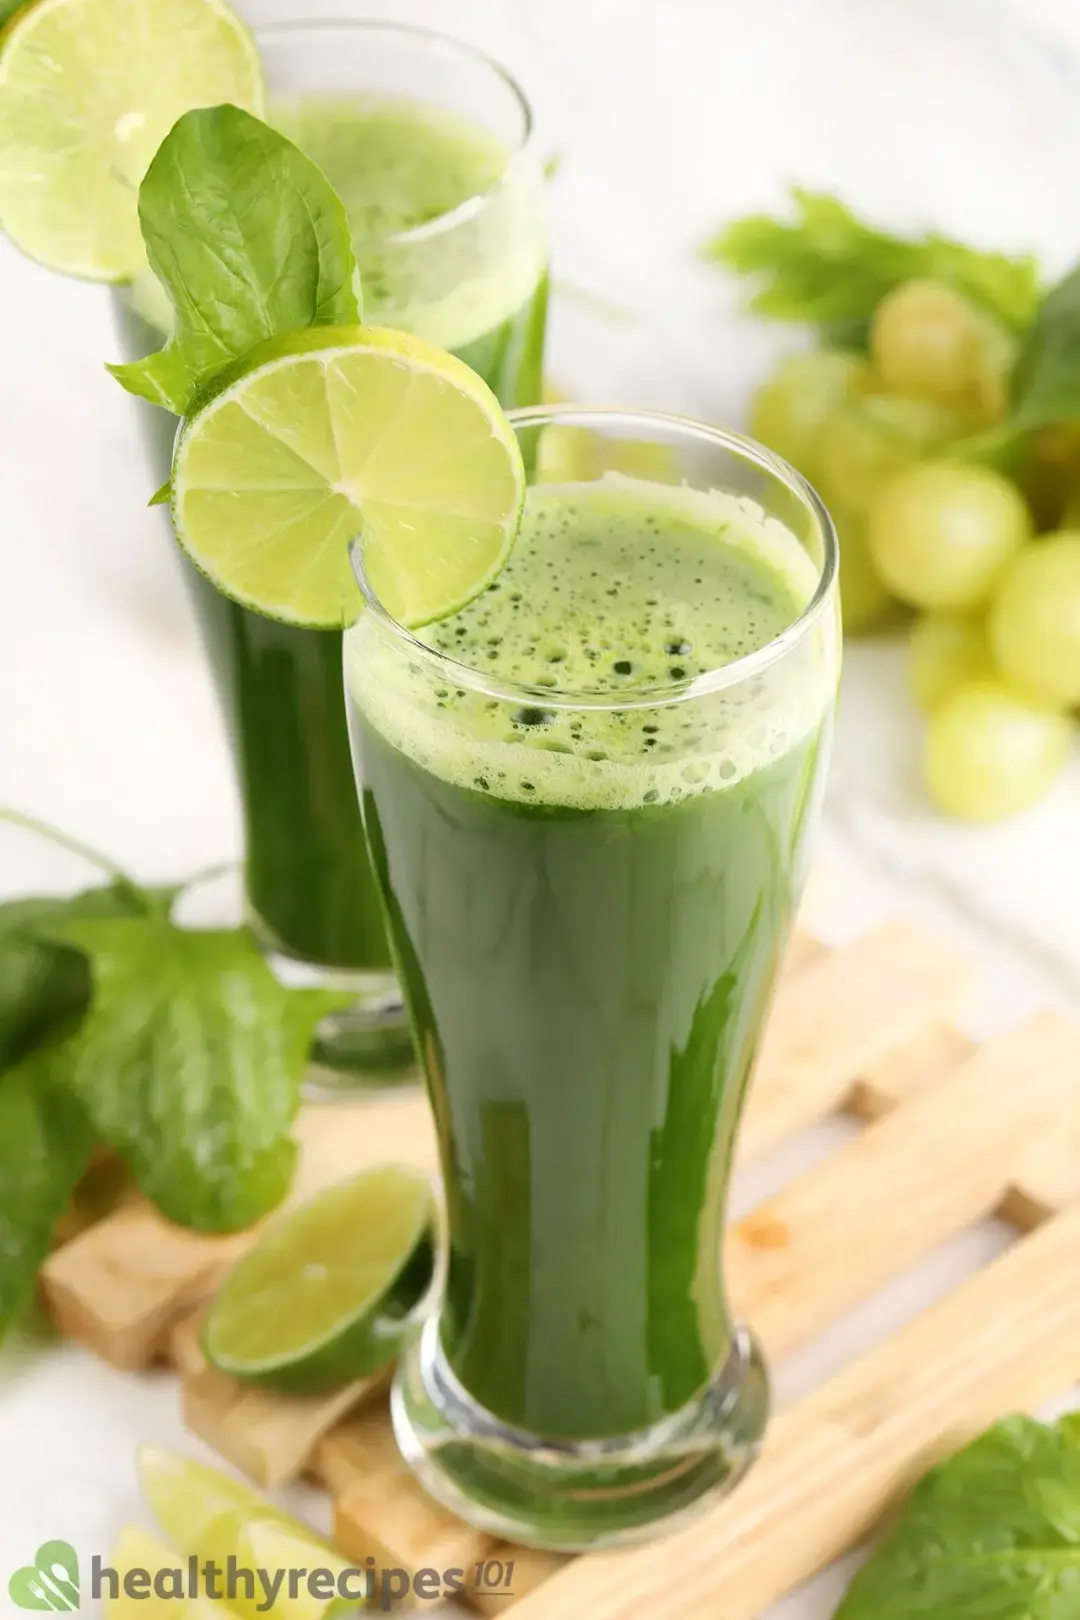 Spinach Juice Recipe 1